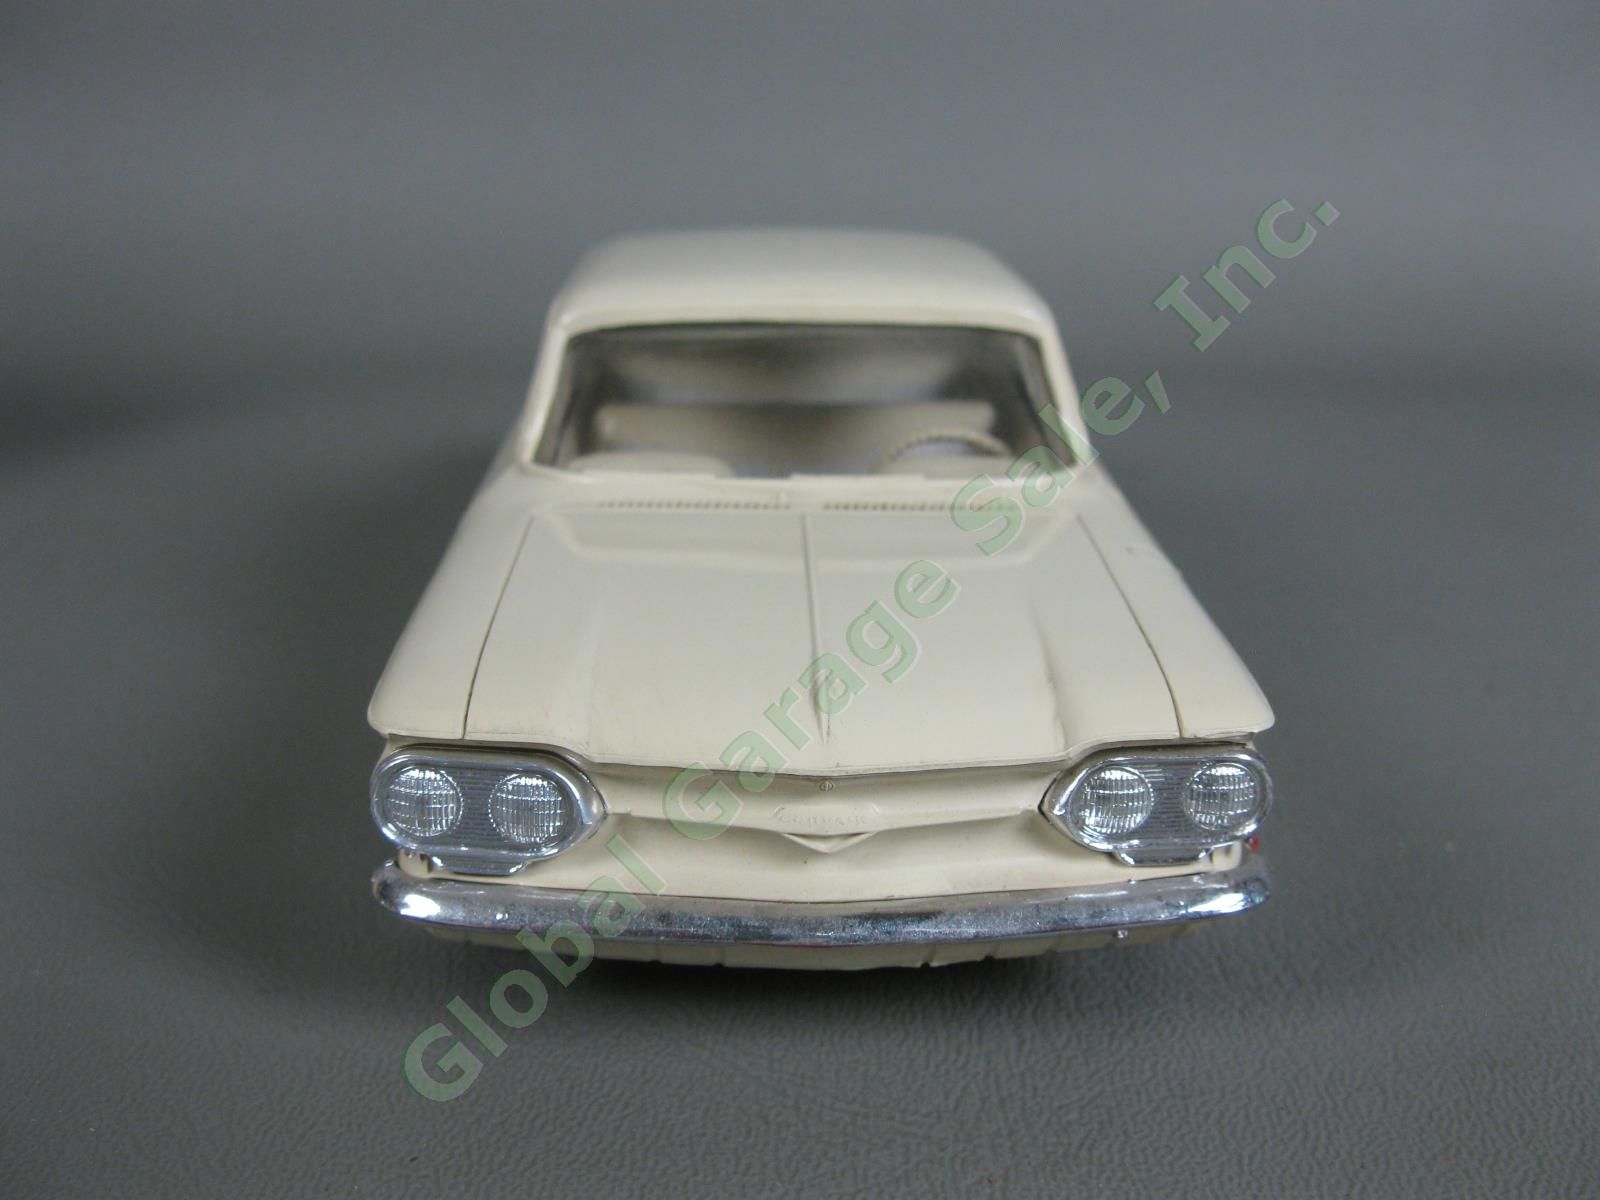 ORIGINAL Vintage 1961 Chevrolet Cameo White Corvair Dealer Promo Model Car NR 2